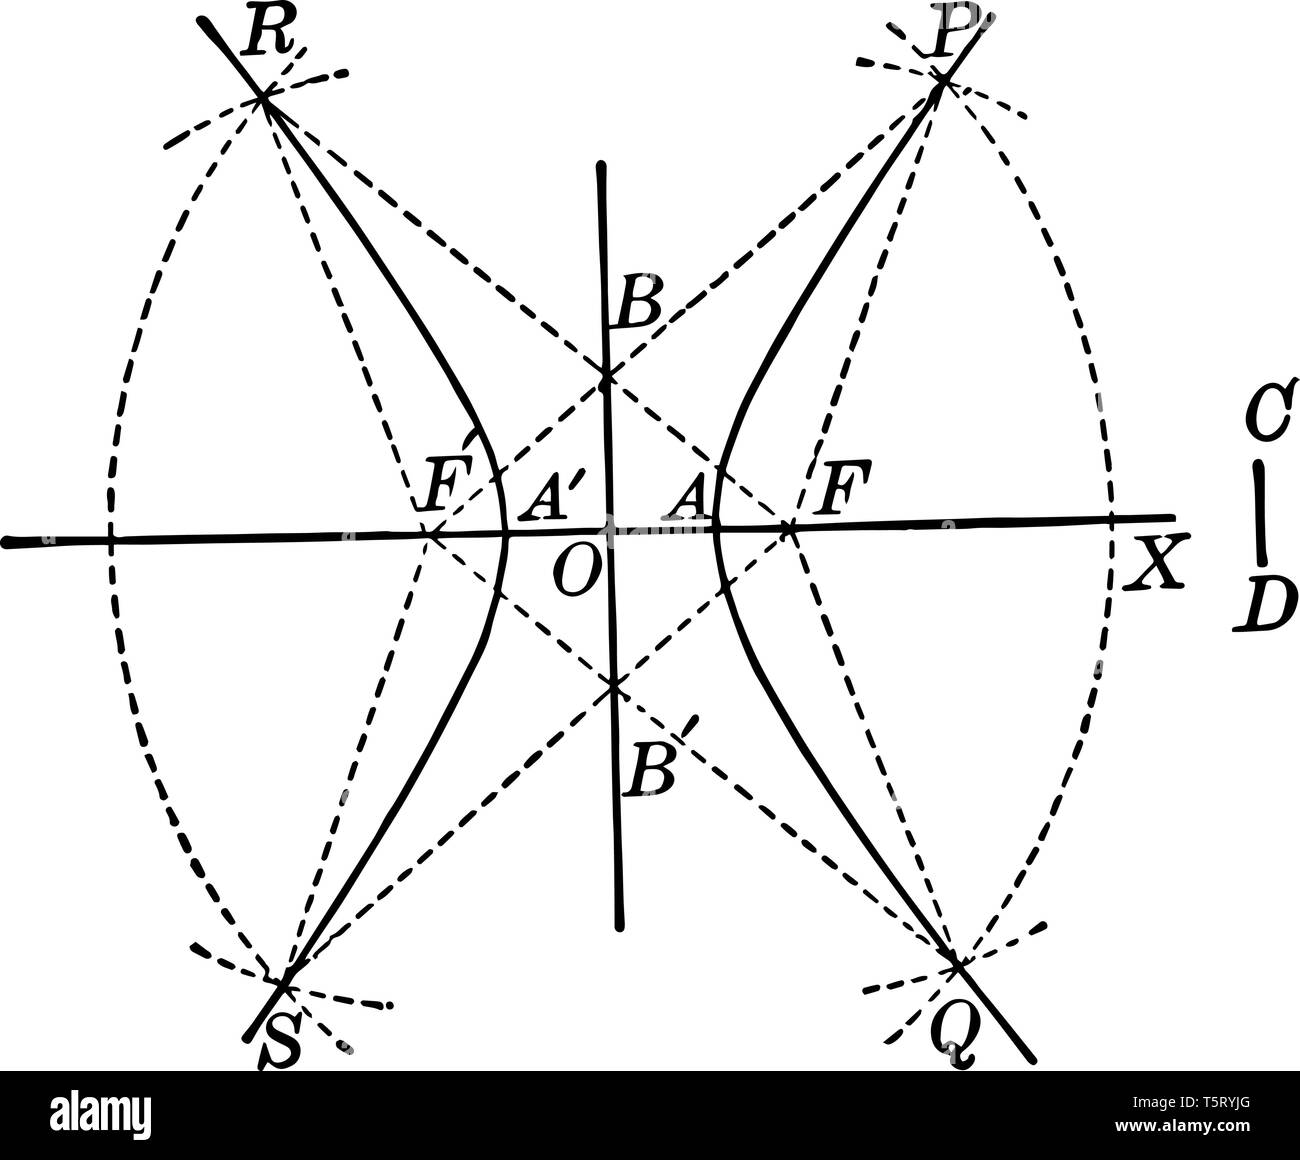 C'è un incrocio da due archi di cerchio del raggio. L'asse x è l'asse orizzontale o l'asse reale, l'altra è l'asse y è verticale e vi Illustrazione Vettoriale